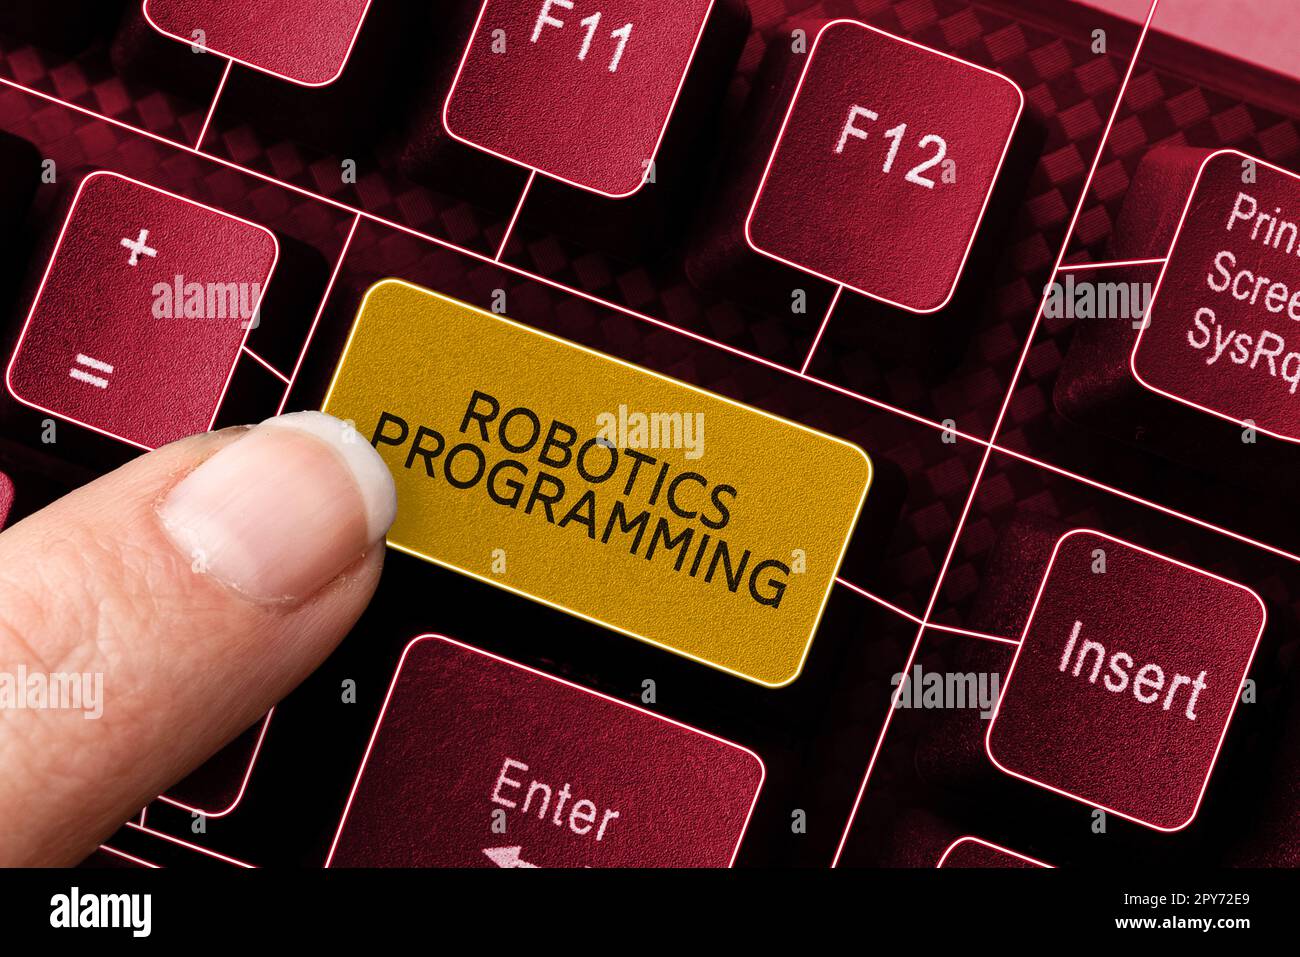 Programmazione robotica per scrittura a mano. Software fotografico concettuale utilizzato per eseguire attività autonome Foto Stock